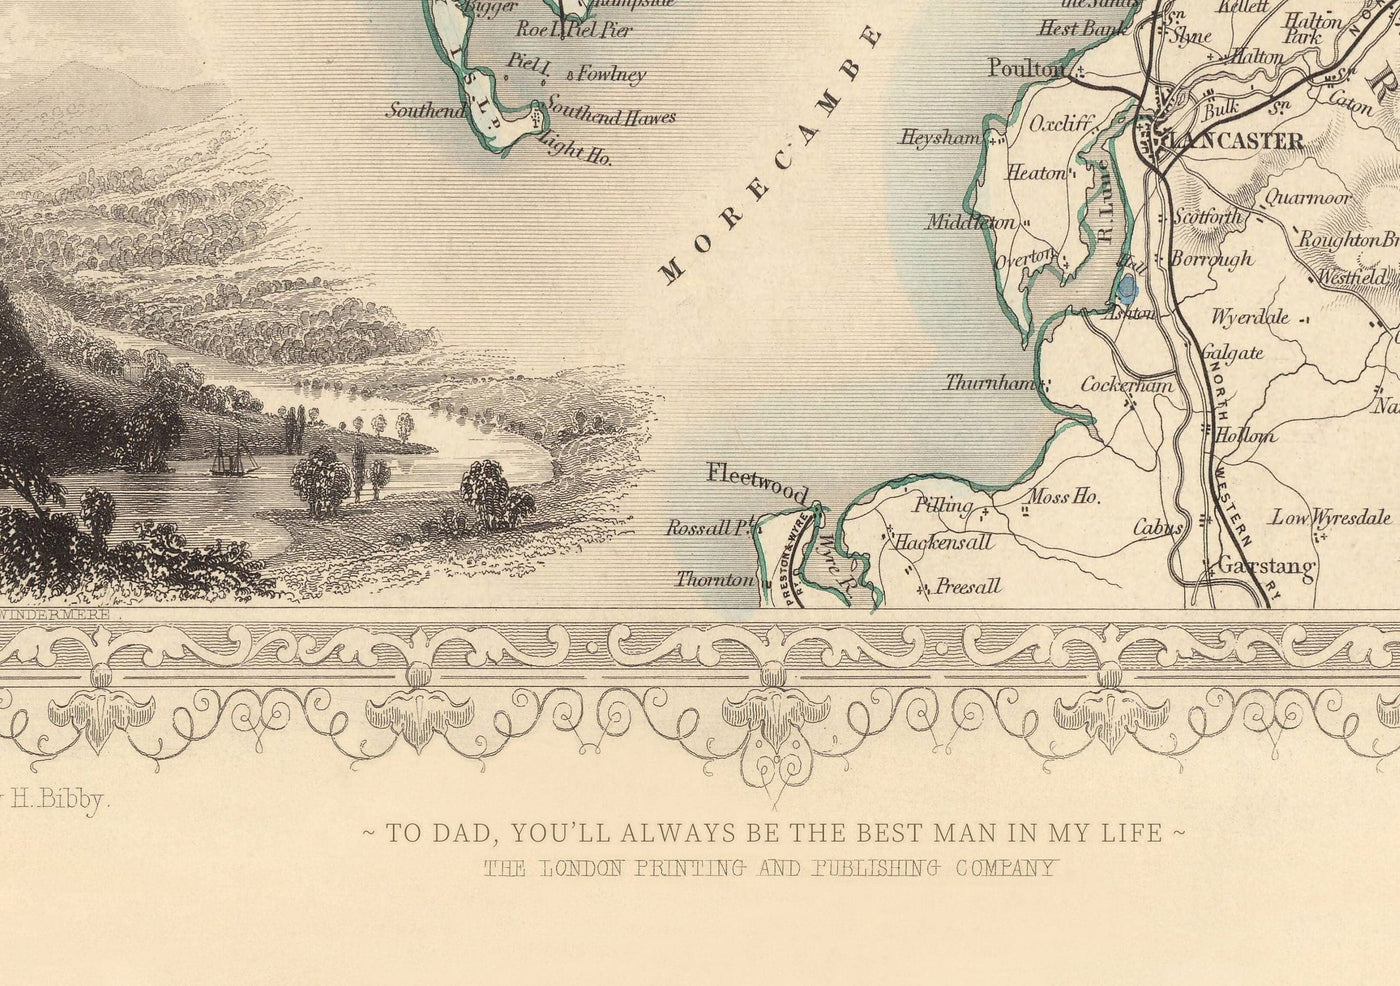 Alte Karte von Southampton 1851 von Tallis & Rapkin - Stadtzentrum, River Iphen, Kapelle, Docks, Ocean Village